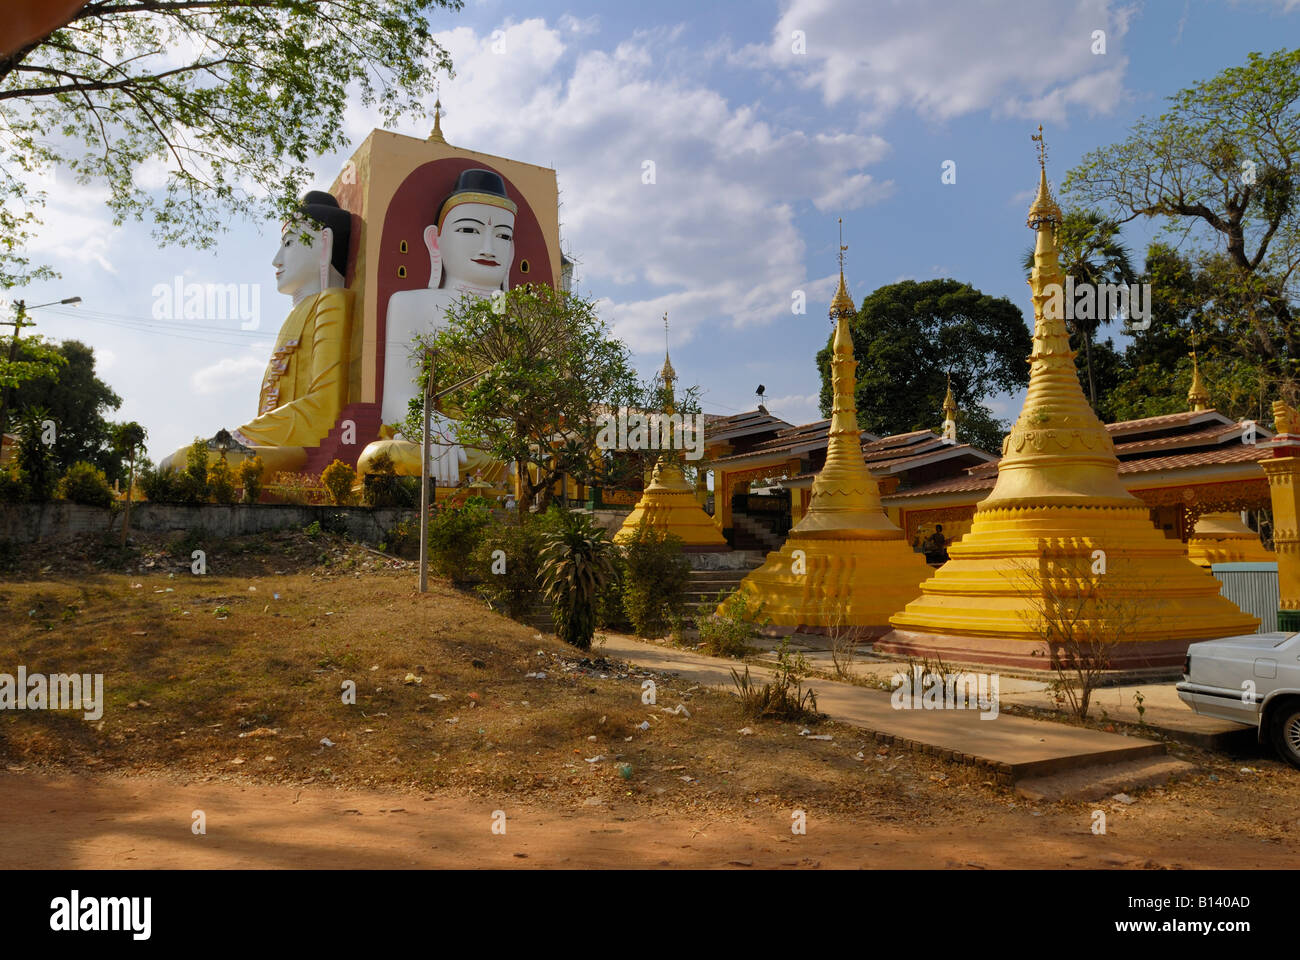 Les figures de Bouddha à la Pagode Kyaikpun, quatre bouddhas assis de 30 mètres de haut, Bago, PEGU EN BIRMANIE MYANMAR BIRMANIE, Asie Banque D'Images